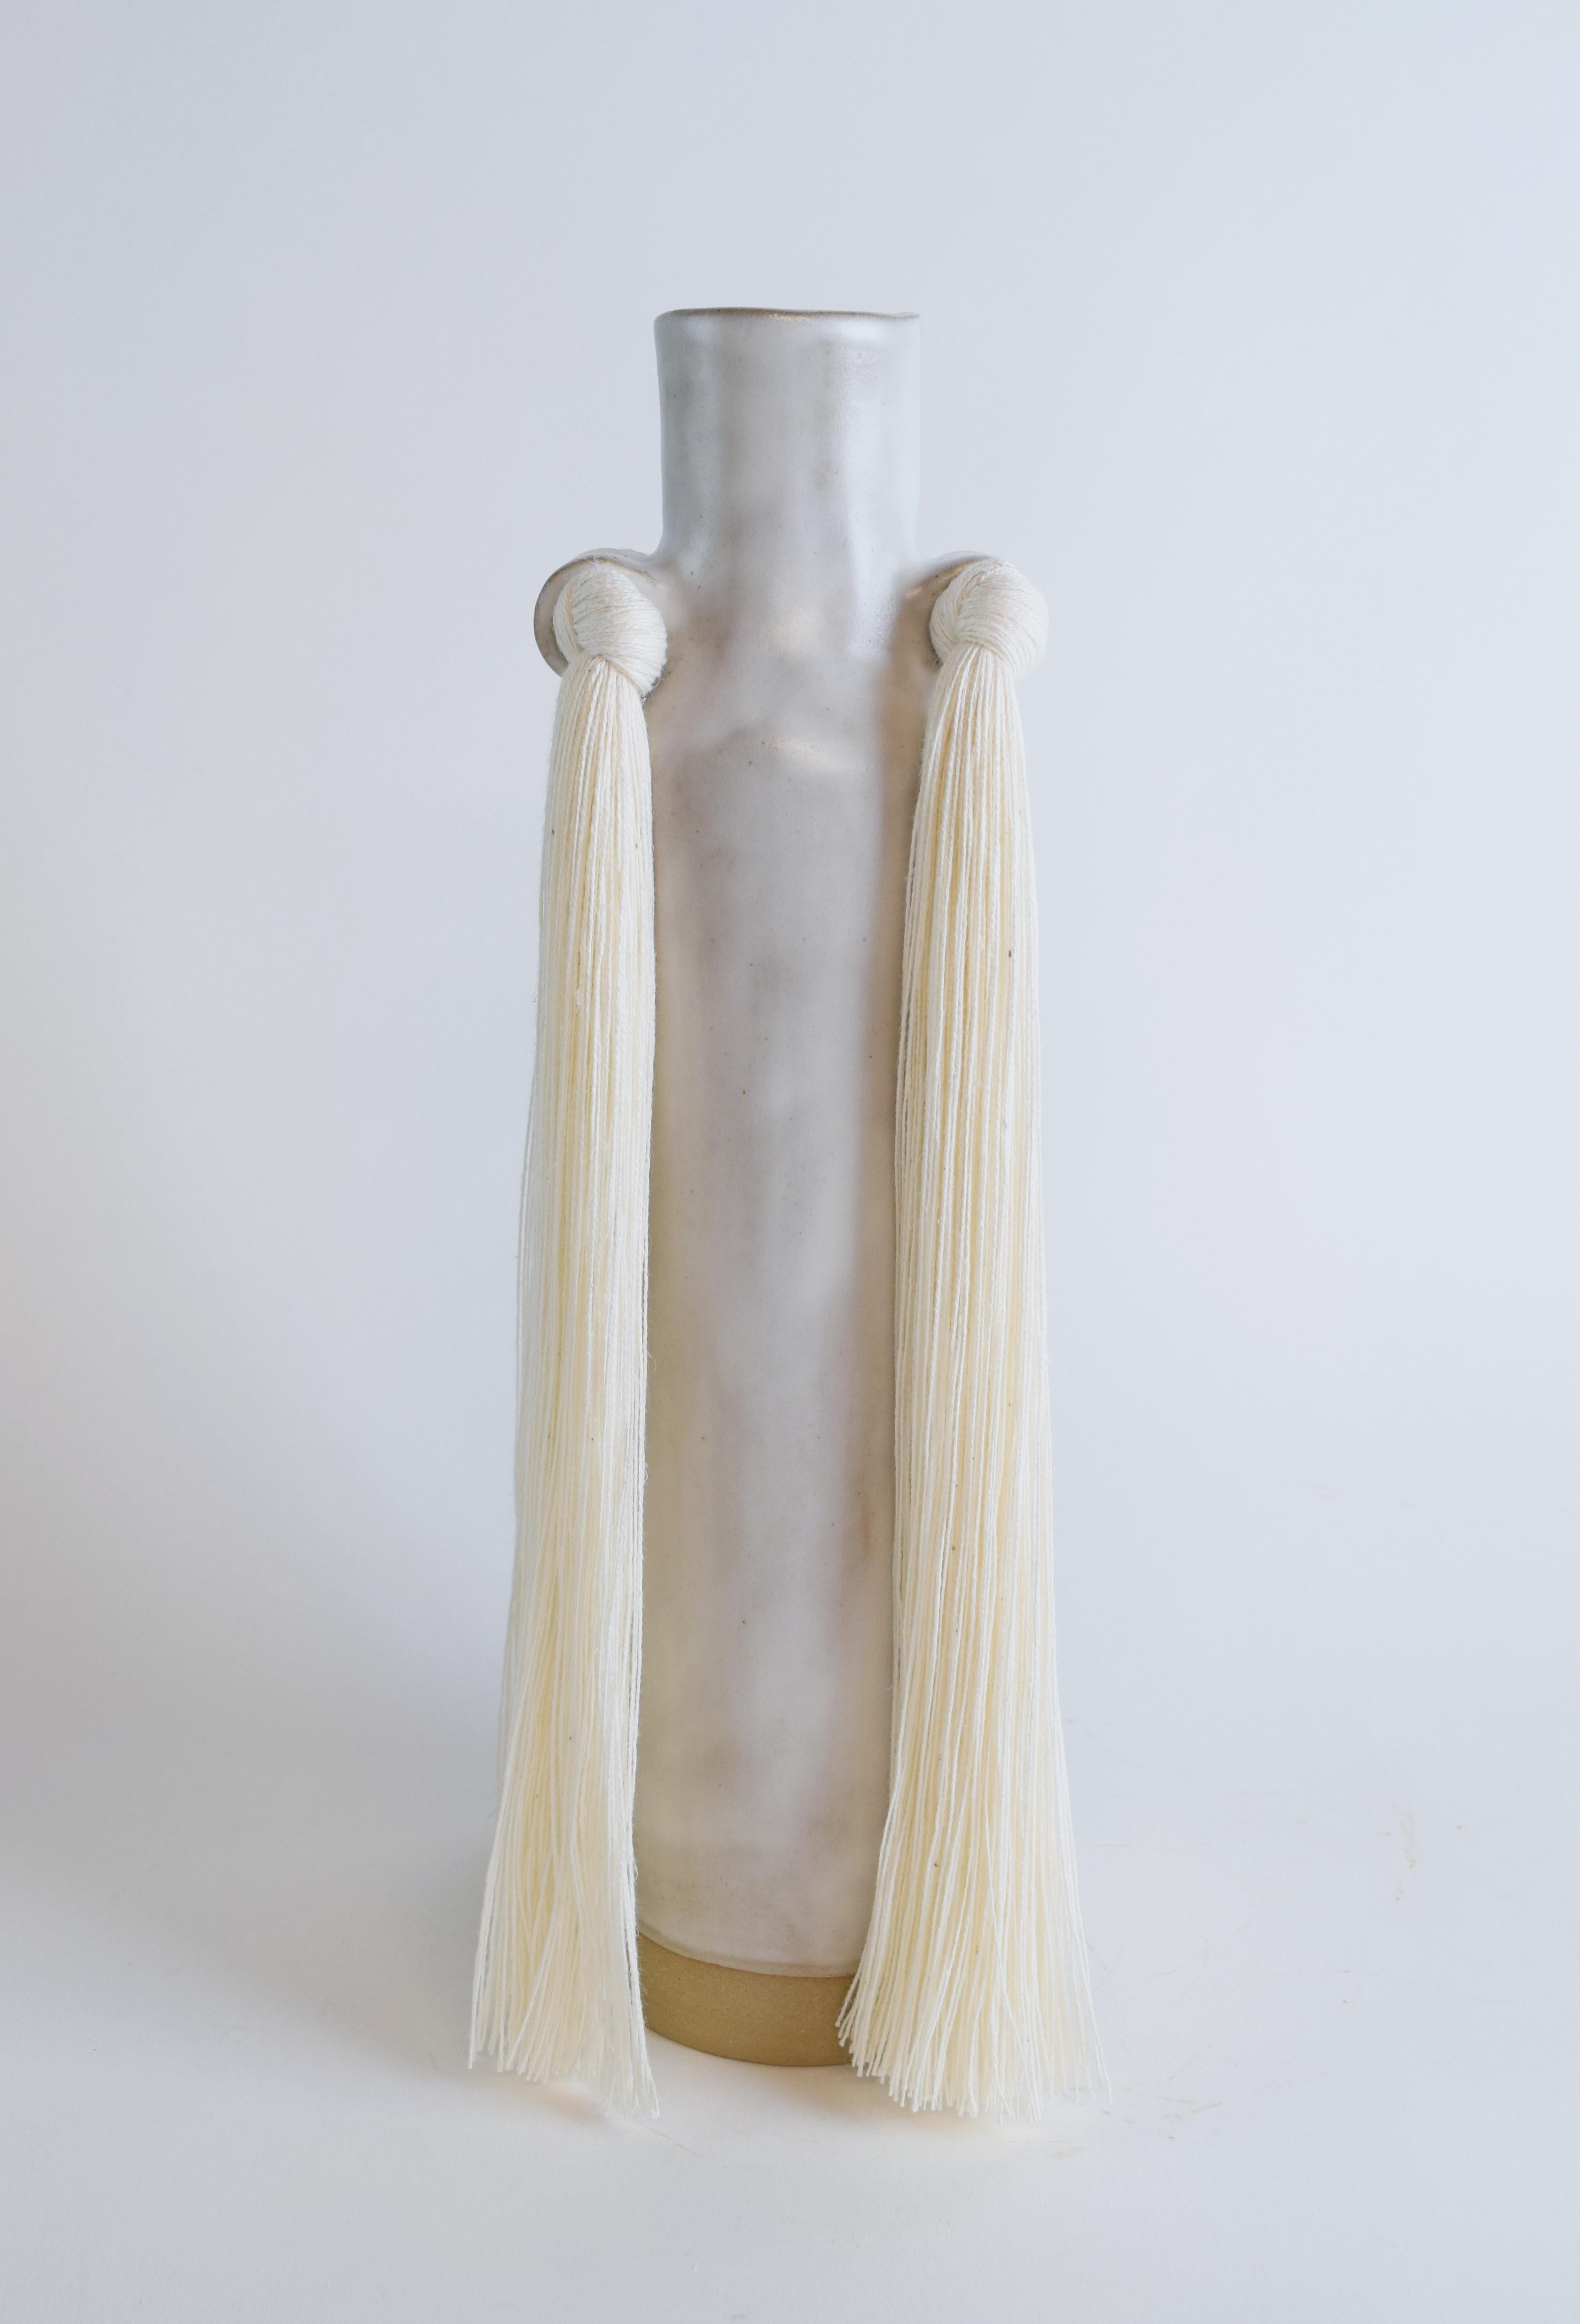 Vase #703 par Karen Gayle Tinney

Reprenant les détails caractéristiques d'autres pièces de la Collection S &Tradition, ce vase est une mise à jour de la silhouette traditionnelle en forme de goulot de bouteille. 

Grès beige formé à la main avec